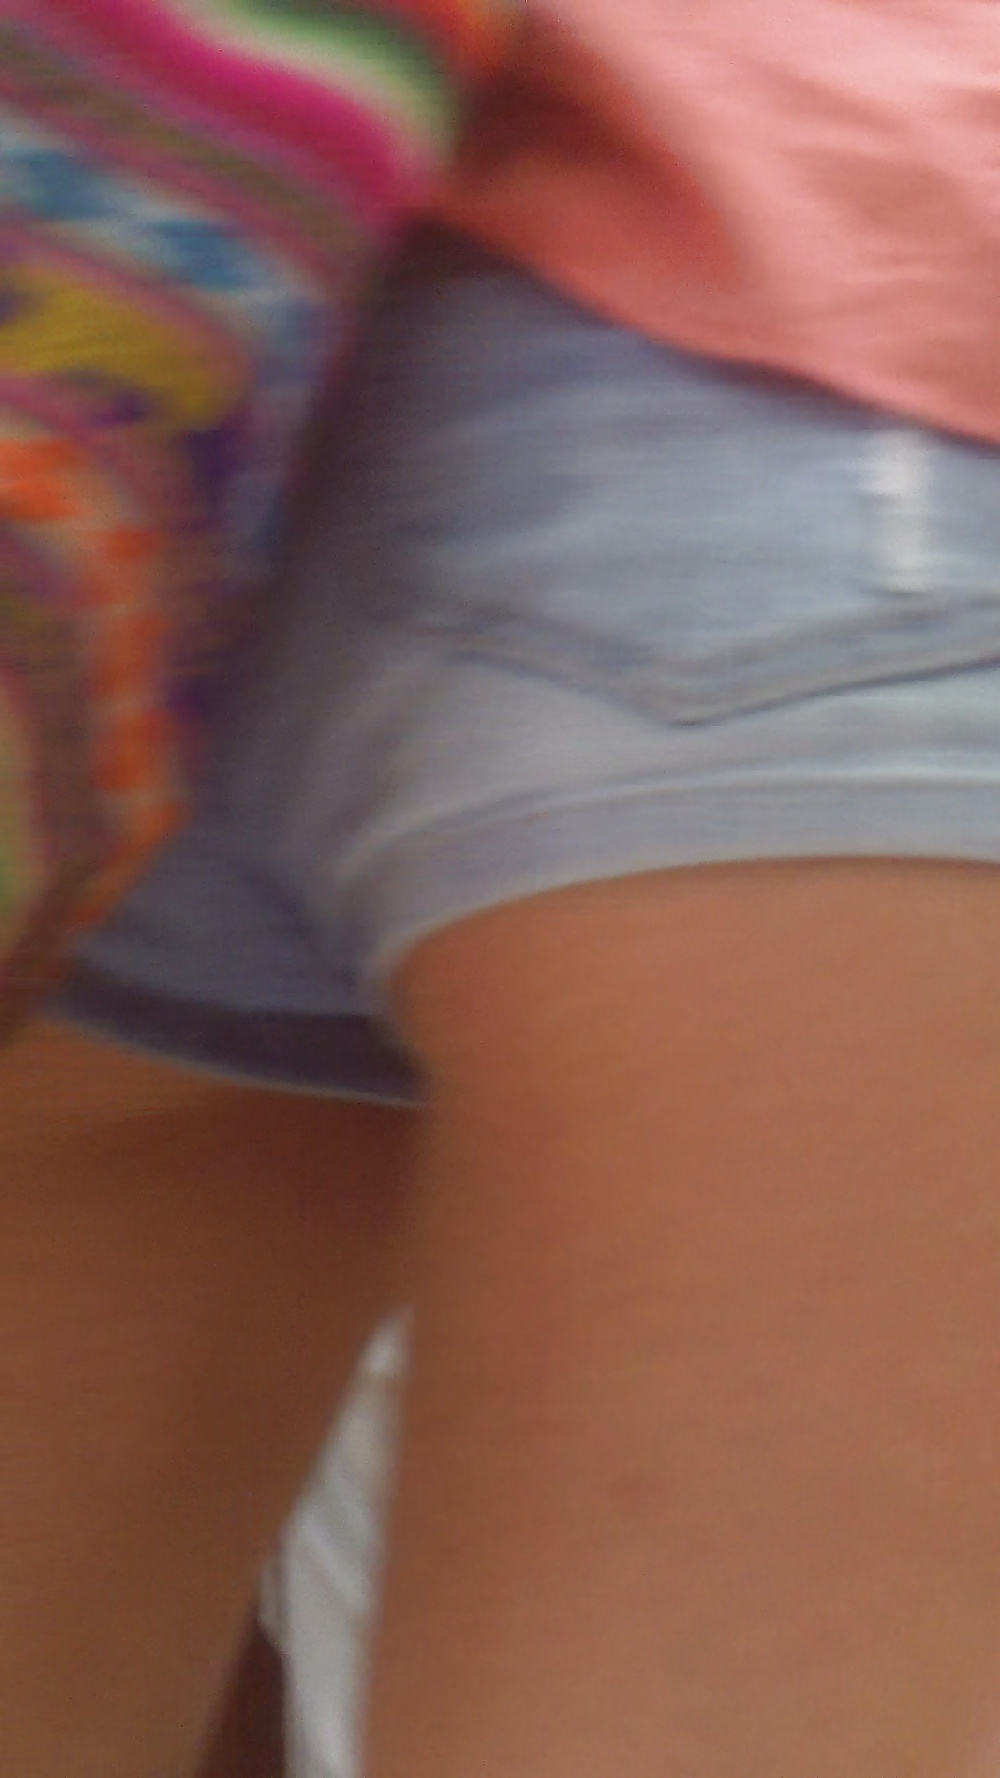 Popular teen girls ass & butt in jeans part 4  #26739160